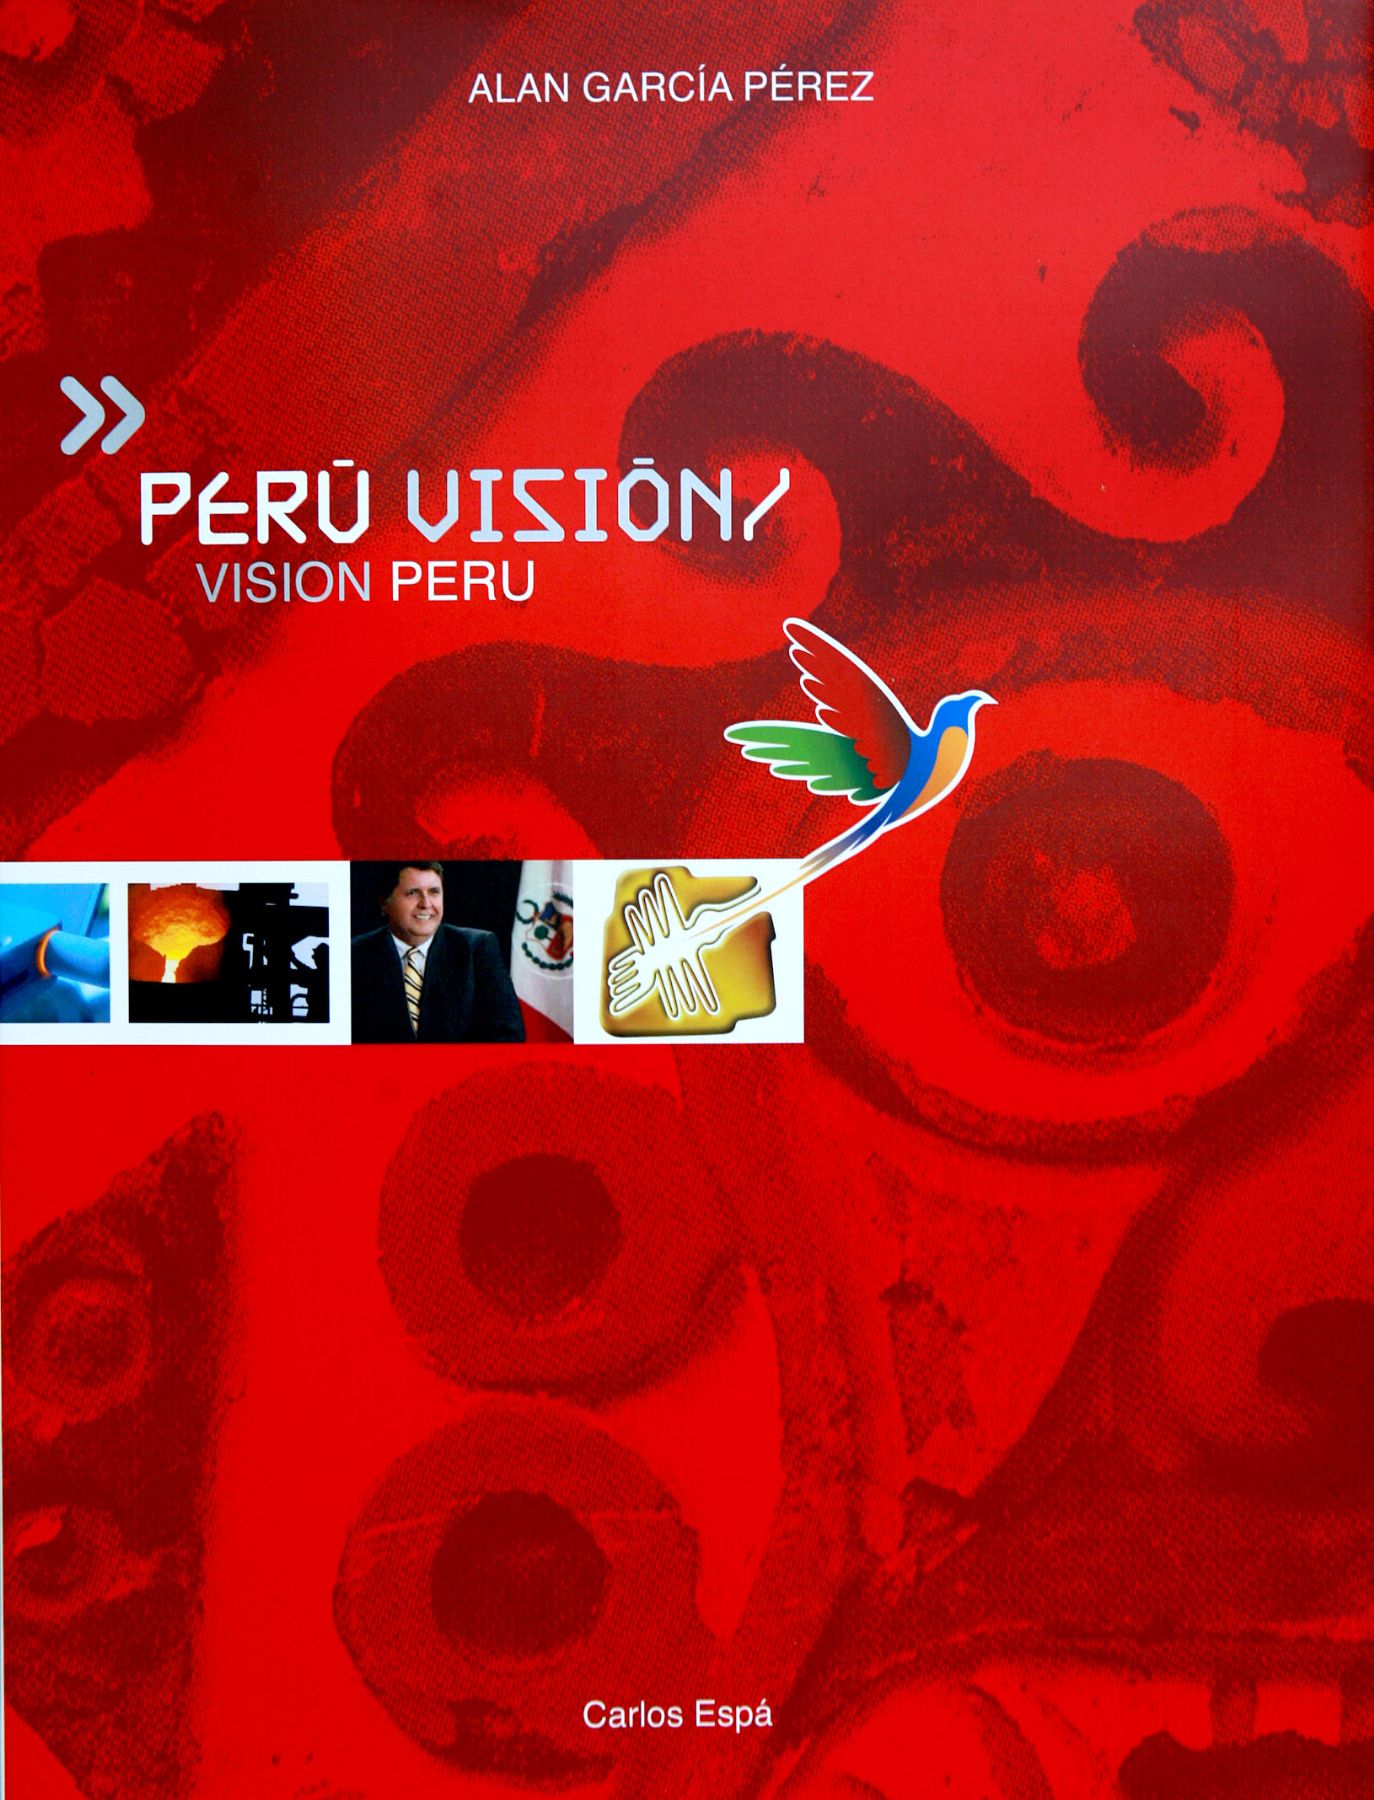 Libro sobre visión, riqueza y potencial del Perú entregado por el presidente Alan García a sus homólogos visitantes.